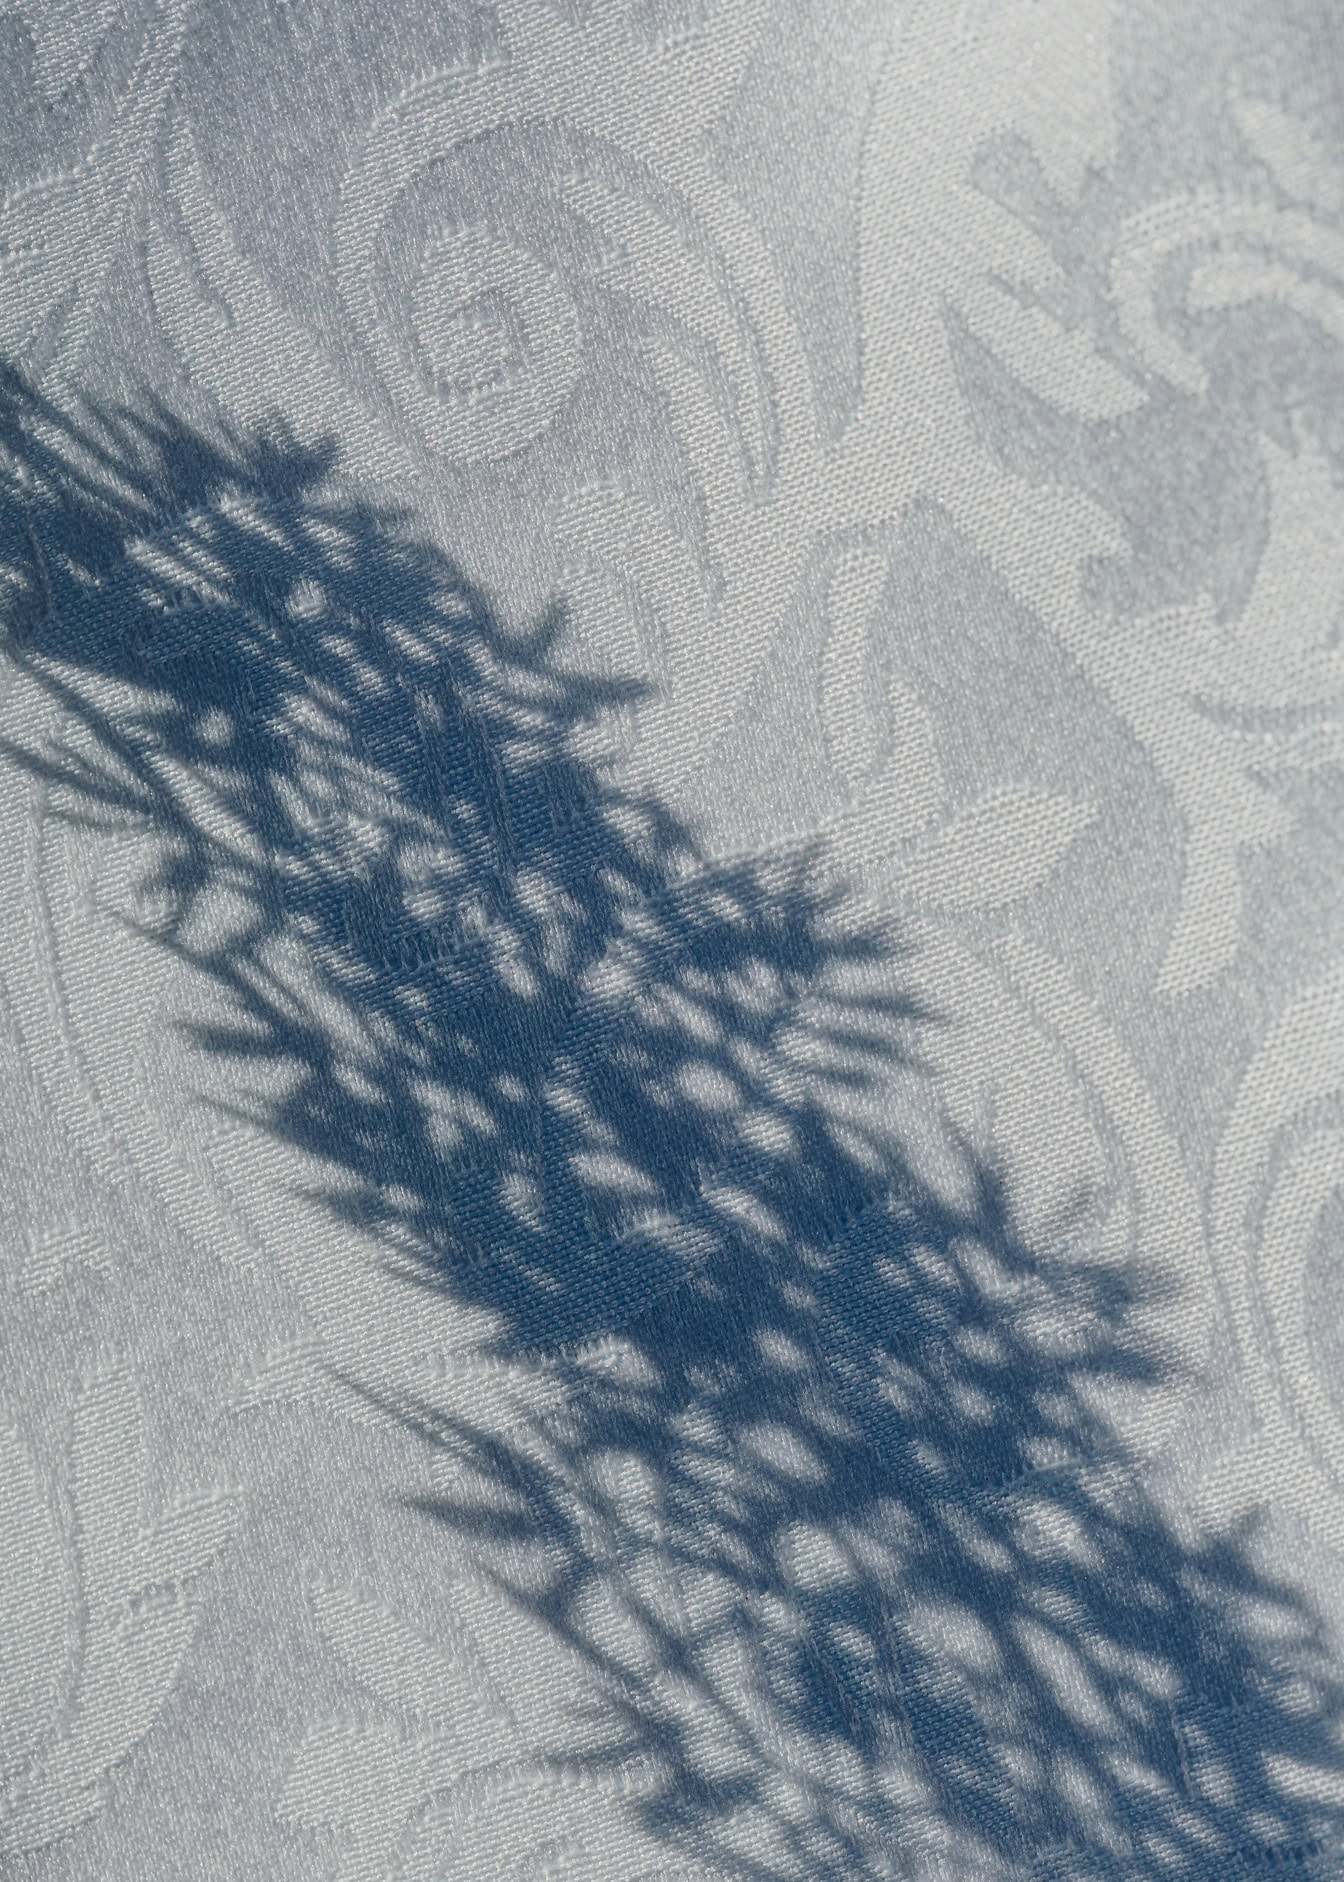 Beyaz şam kumaşının yüzeyinde bir bitkinin gölgesi